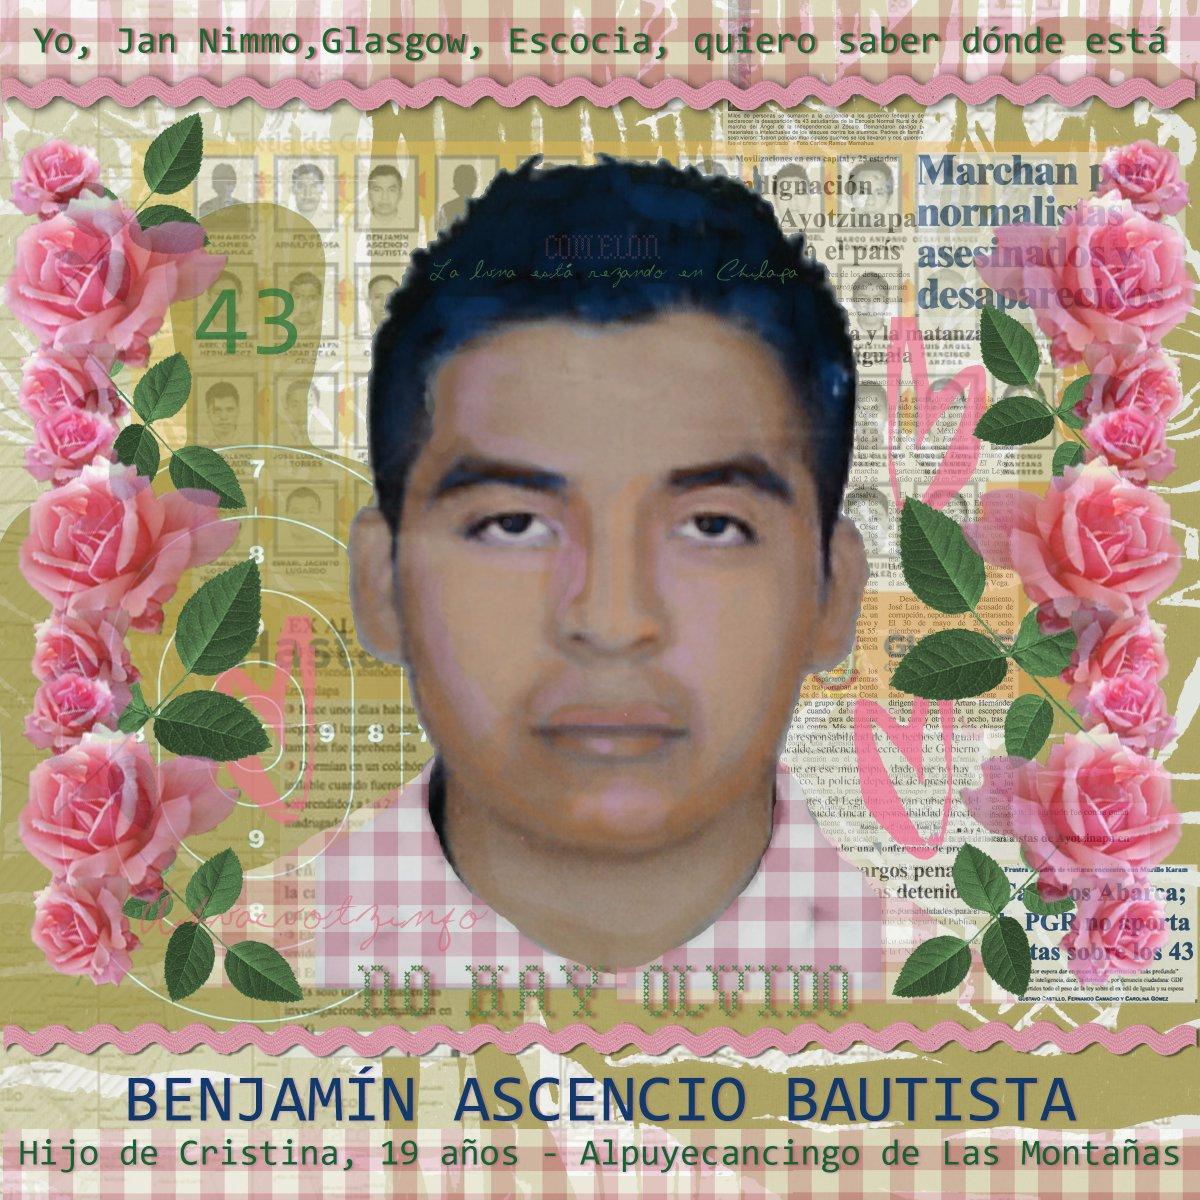 Benjamin Ascencio Bautista by Jan Nimmo